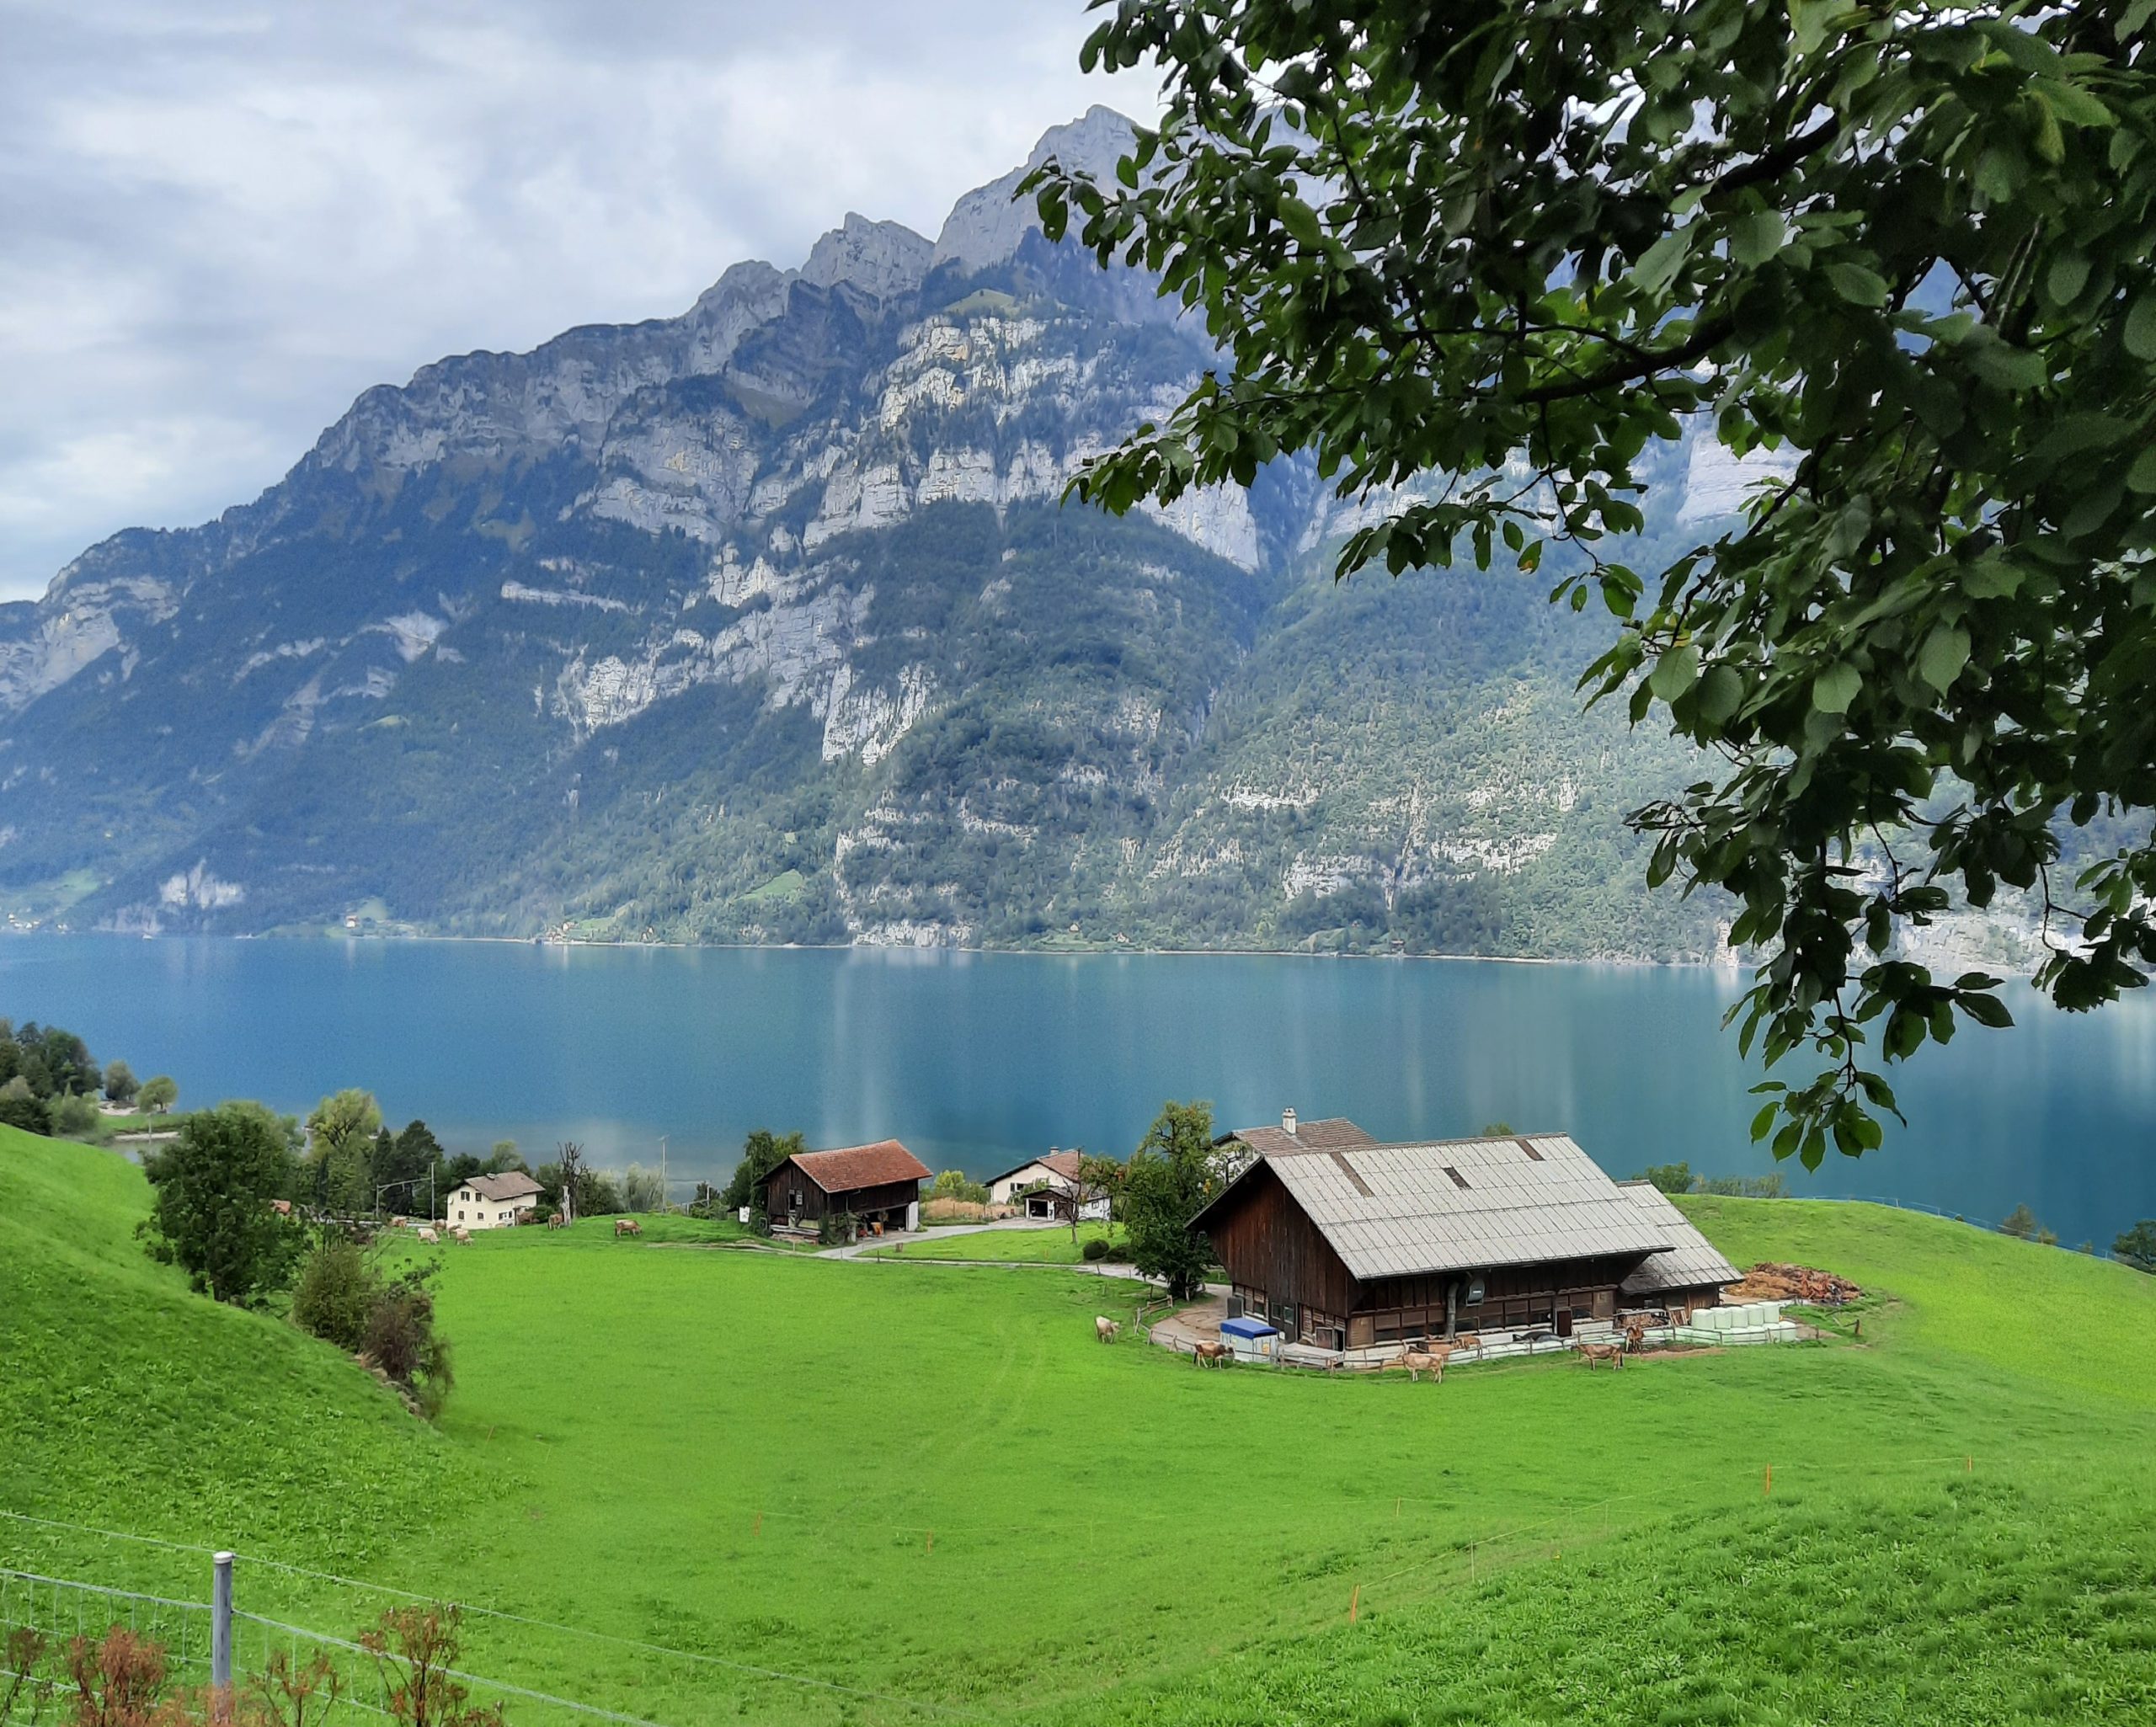 Ausztria-Liechtenstein-Svájc - szeptember (5 nap) Irányár: 420 Eur/fő